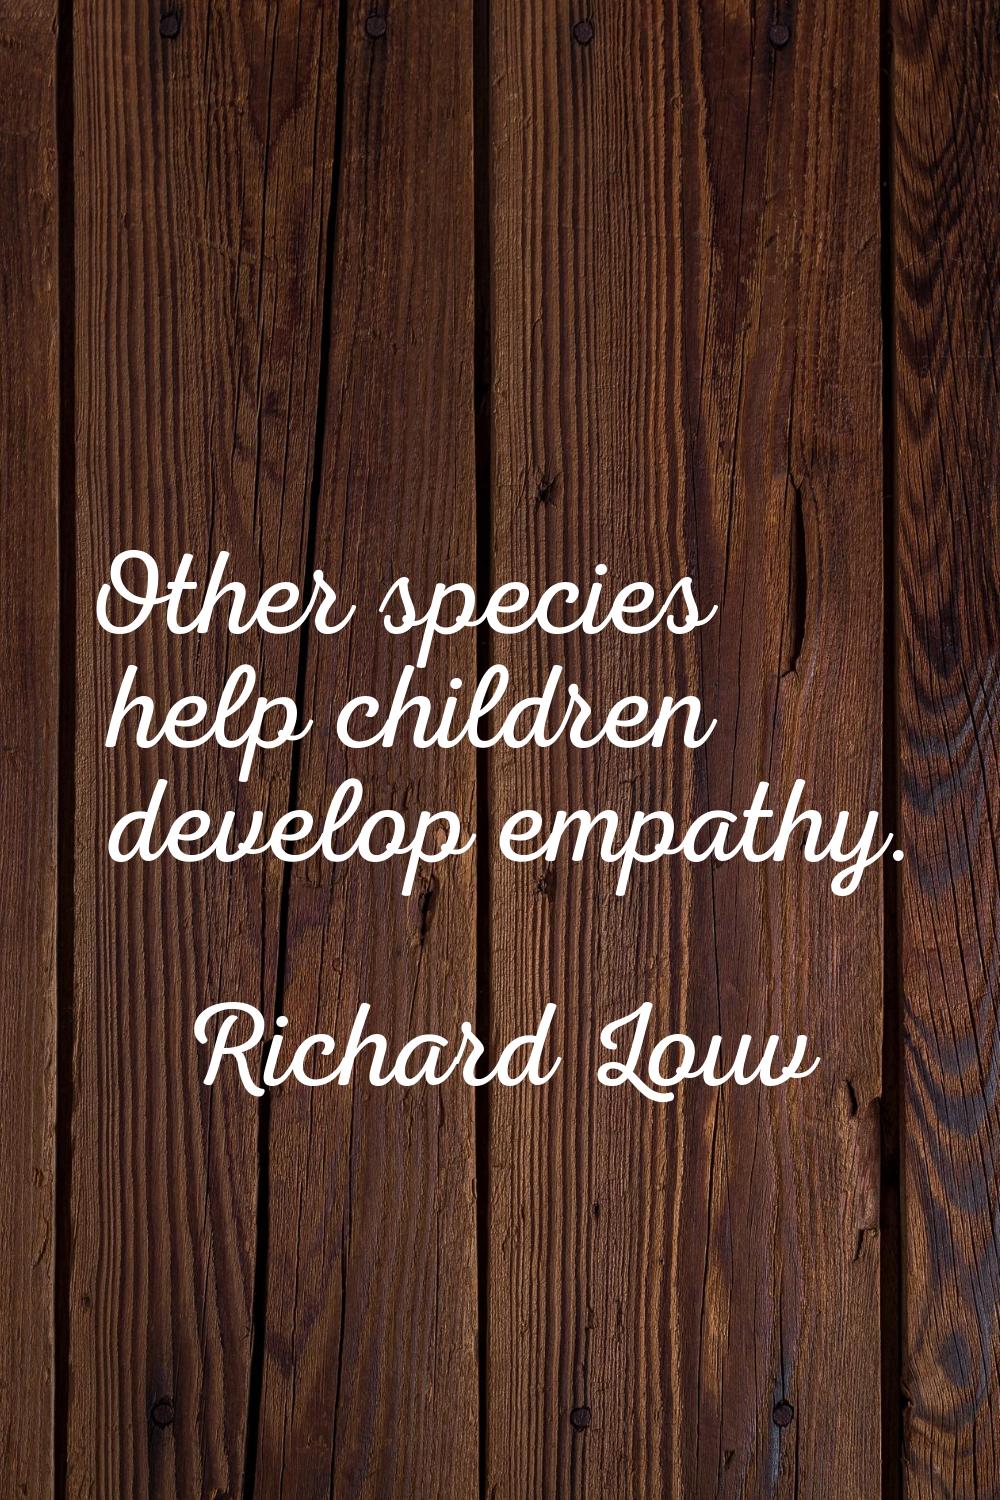 Other species help children develop empathy.